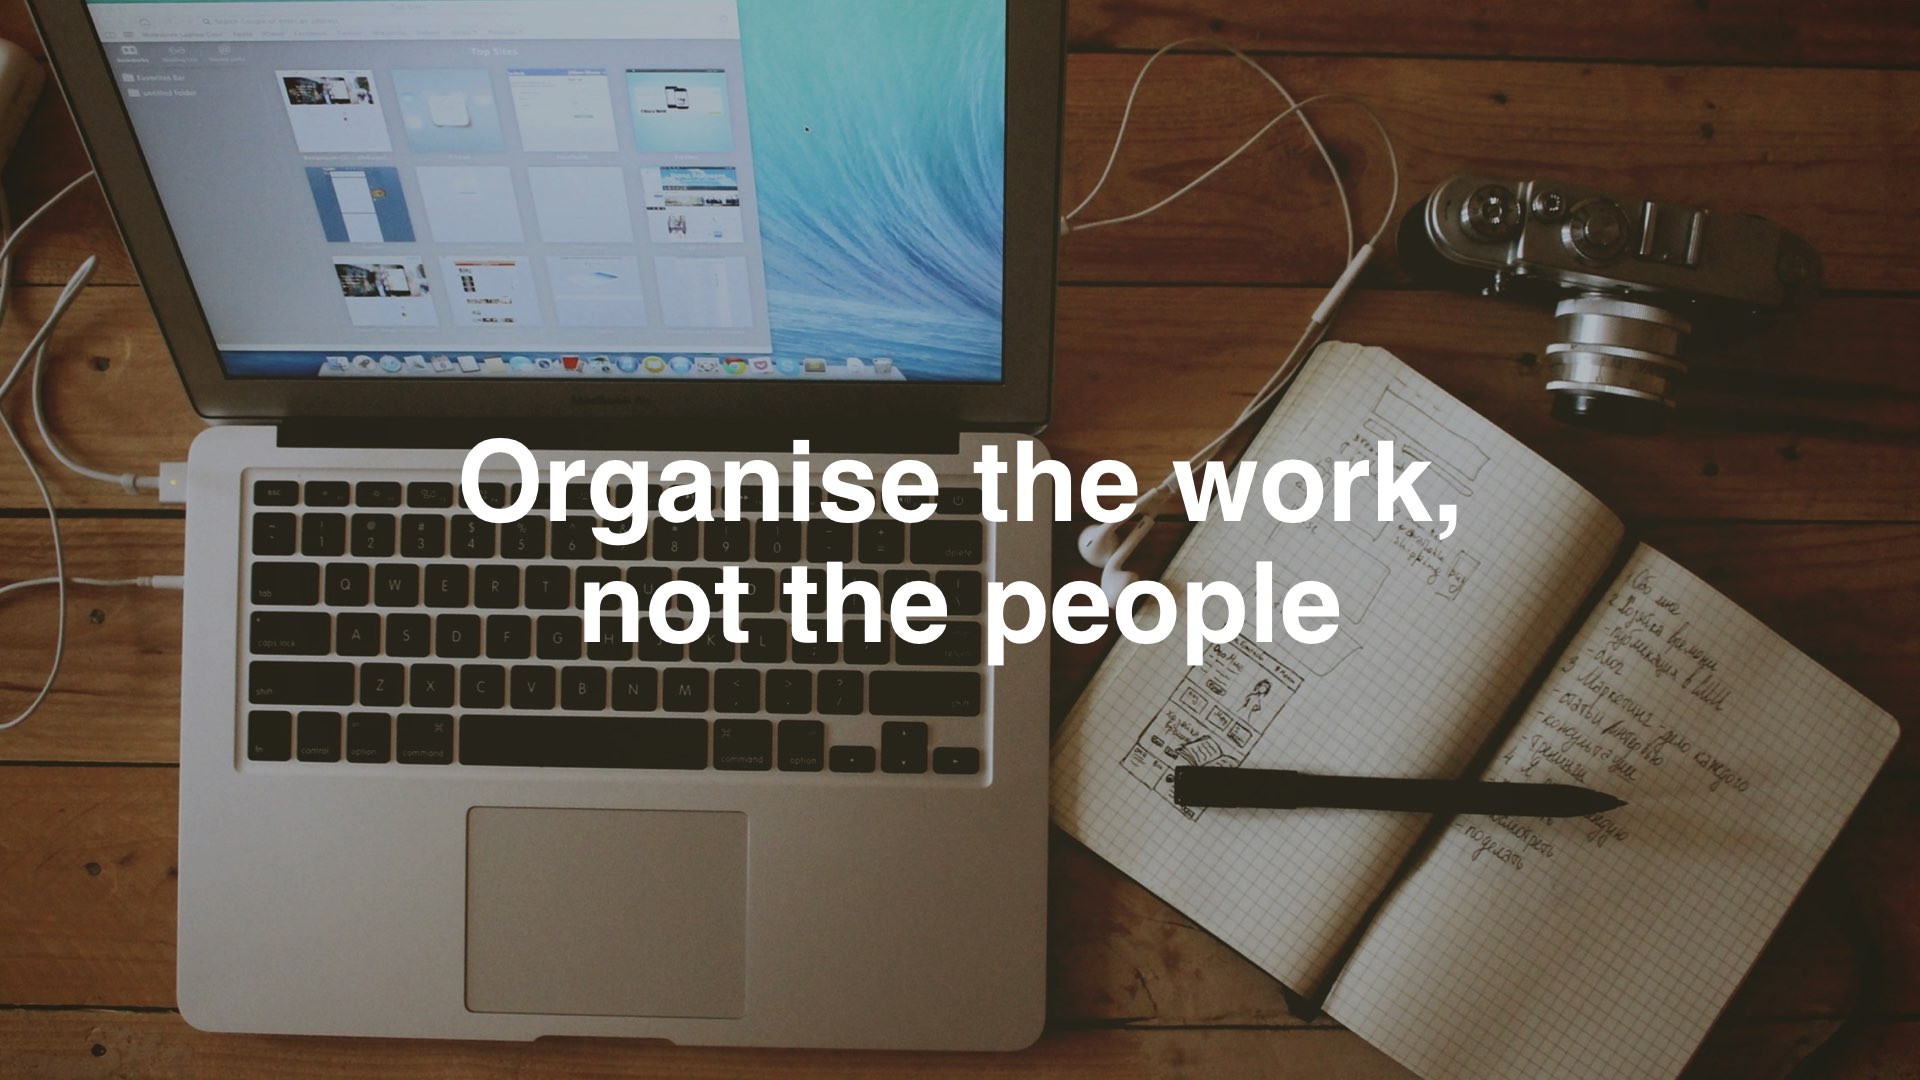 Ein Arbeitsplatz mit Laptop, Schreibgerät und Fotokamera. Auf das Bild geschrieben ist "organize the work, not the people".